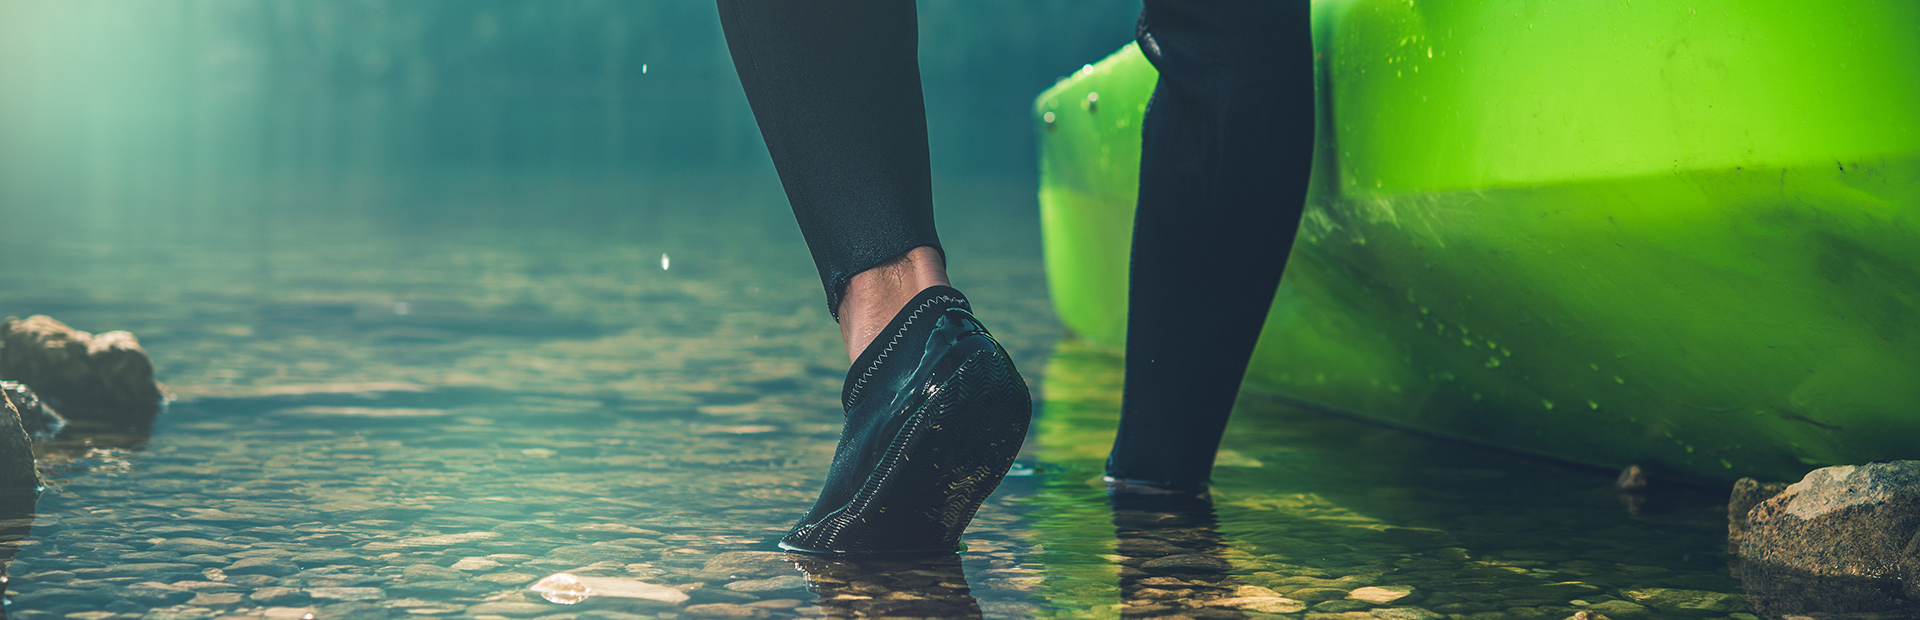 Łydka oraz stopy kajakarza ubranego w profesjonalny strój na nogi oraz gumowe buty. Kajakarz zsuwa z brzegu zielony kajak do wody w celu wypłynięcia na rzekę. 